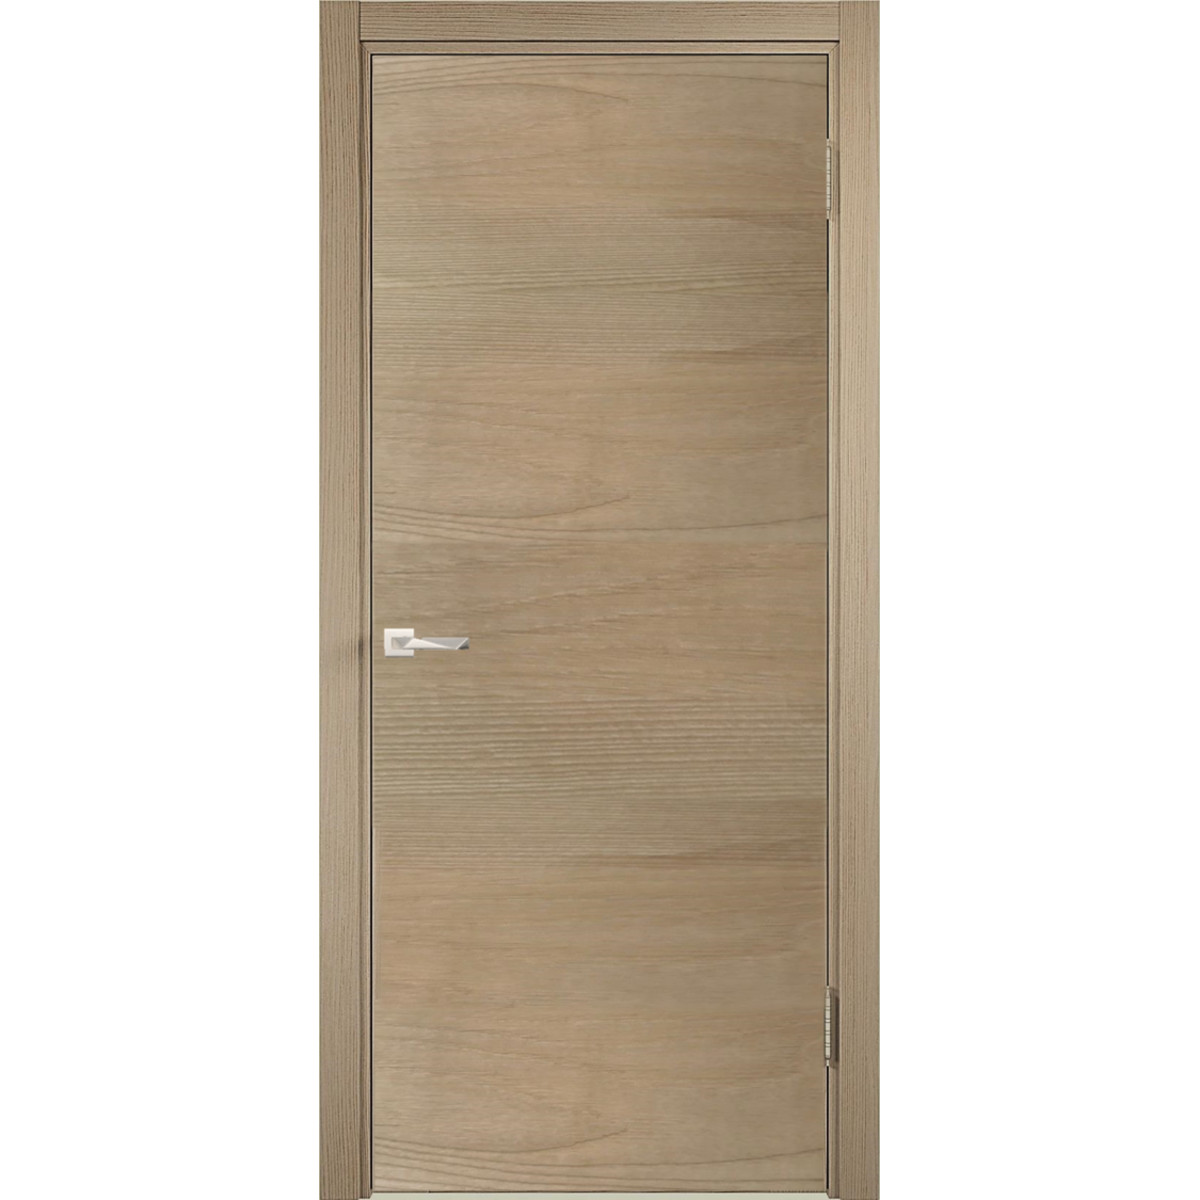 Дверь межкомнатная глухая c замком в комплекте 70x200 см ламинация, цвет ясень коричневый